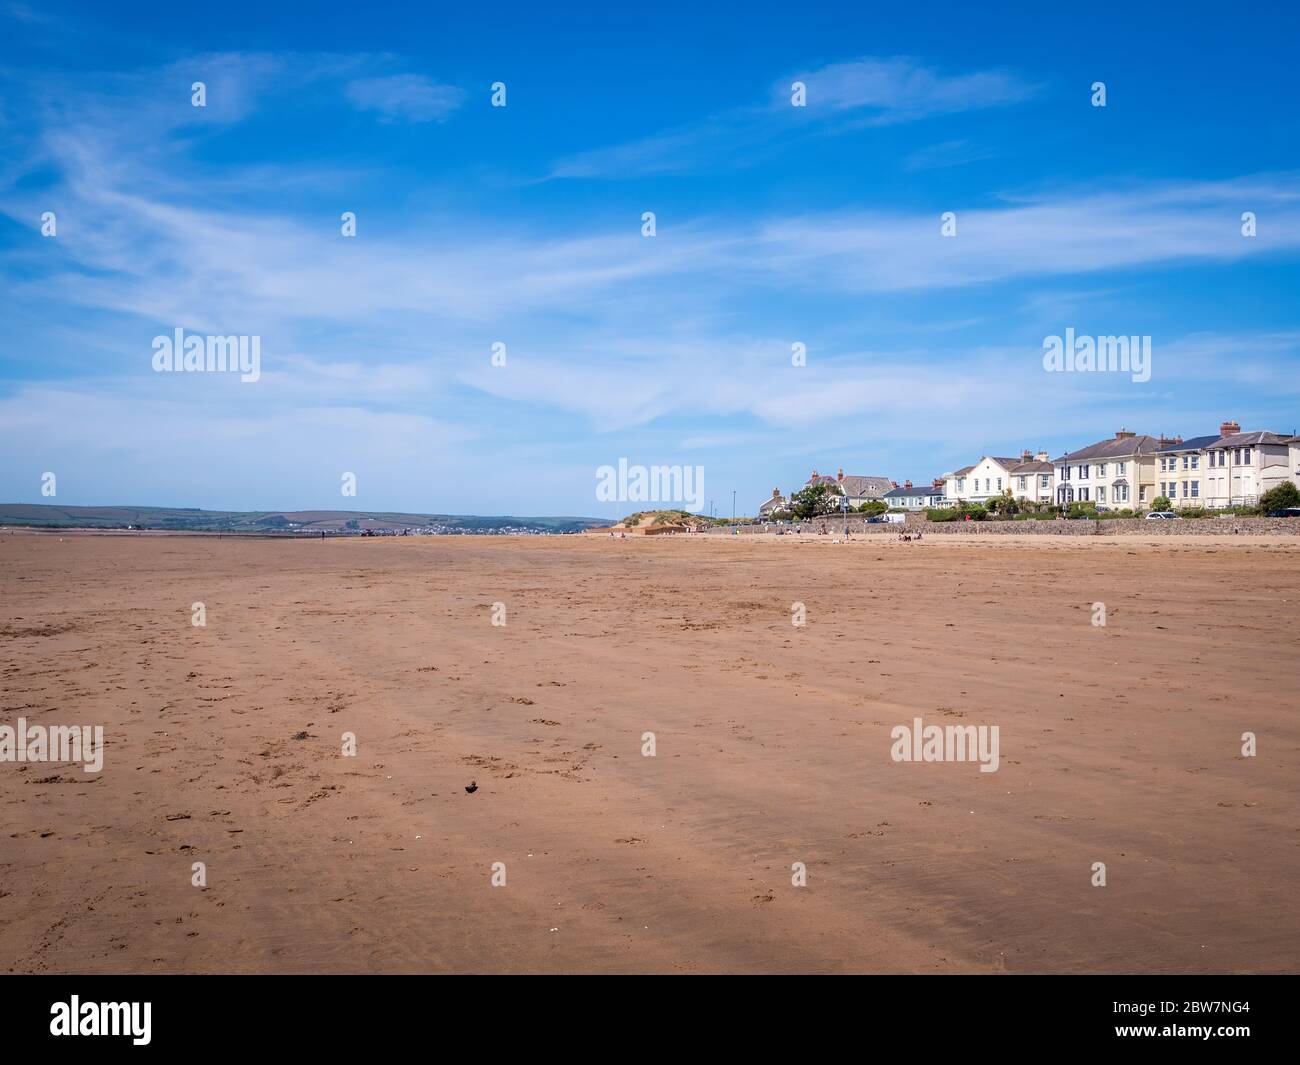 INSTOW, DEVON, UK - MAGGIO 25 2020: Spiaggia di sabbia quasi deserta, Instow, nord Devon UK. Poche persone. Turismo decimato da Coronavirus, Covid blocco. Foto Stock